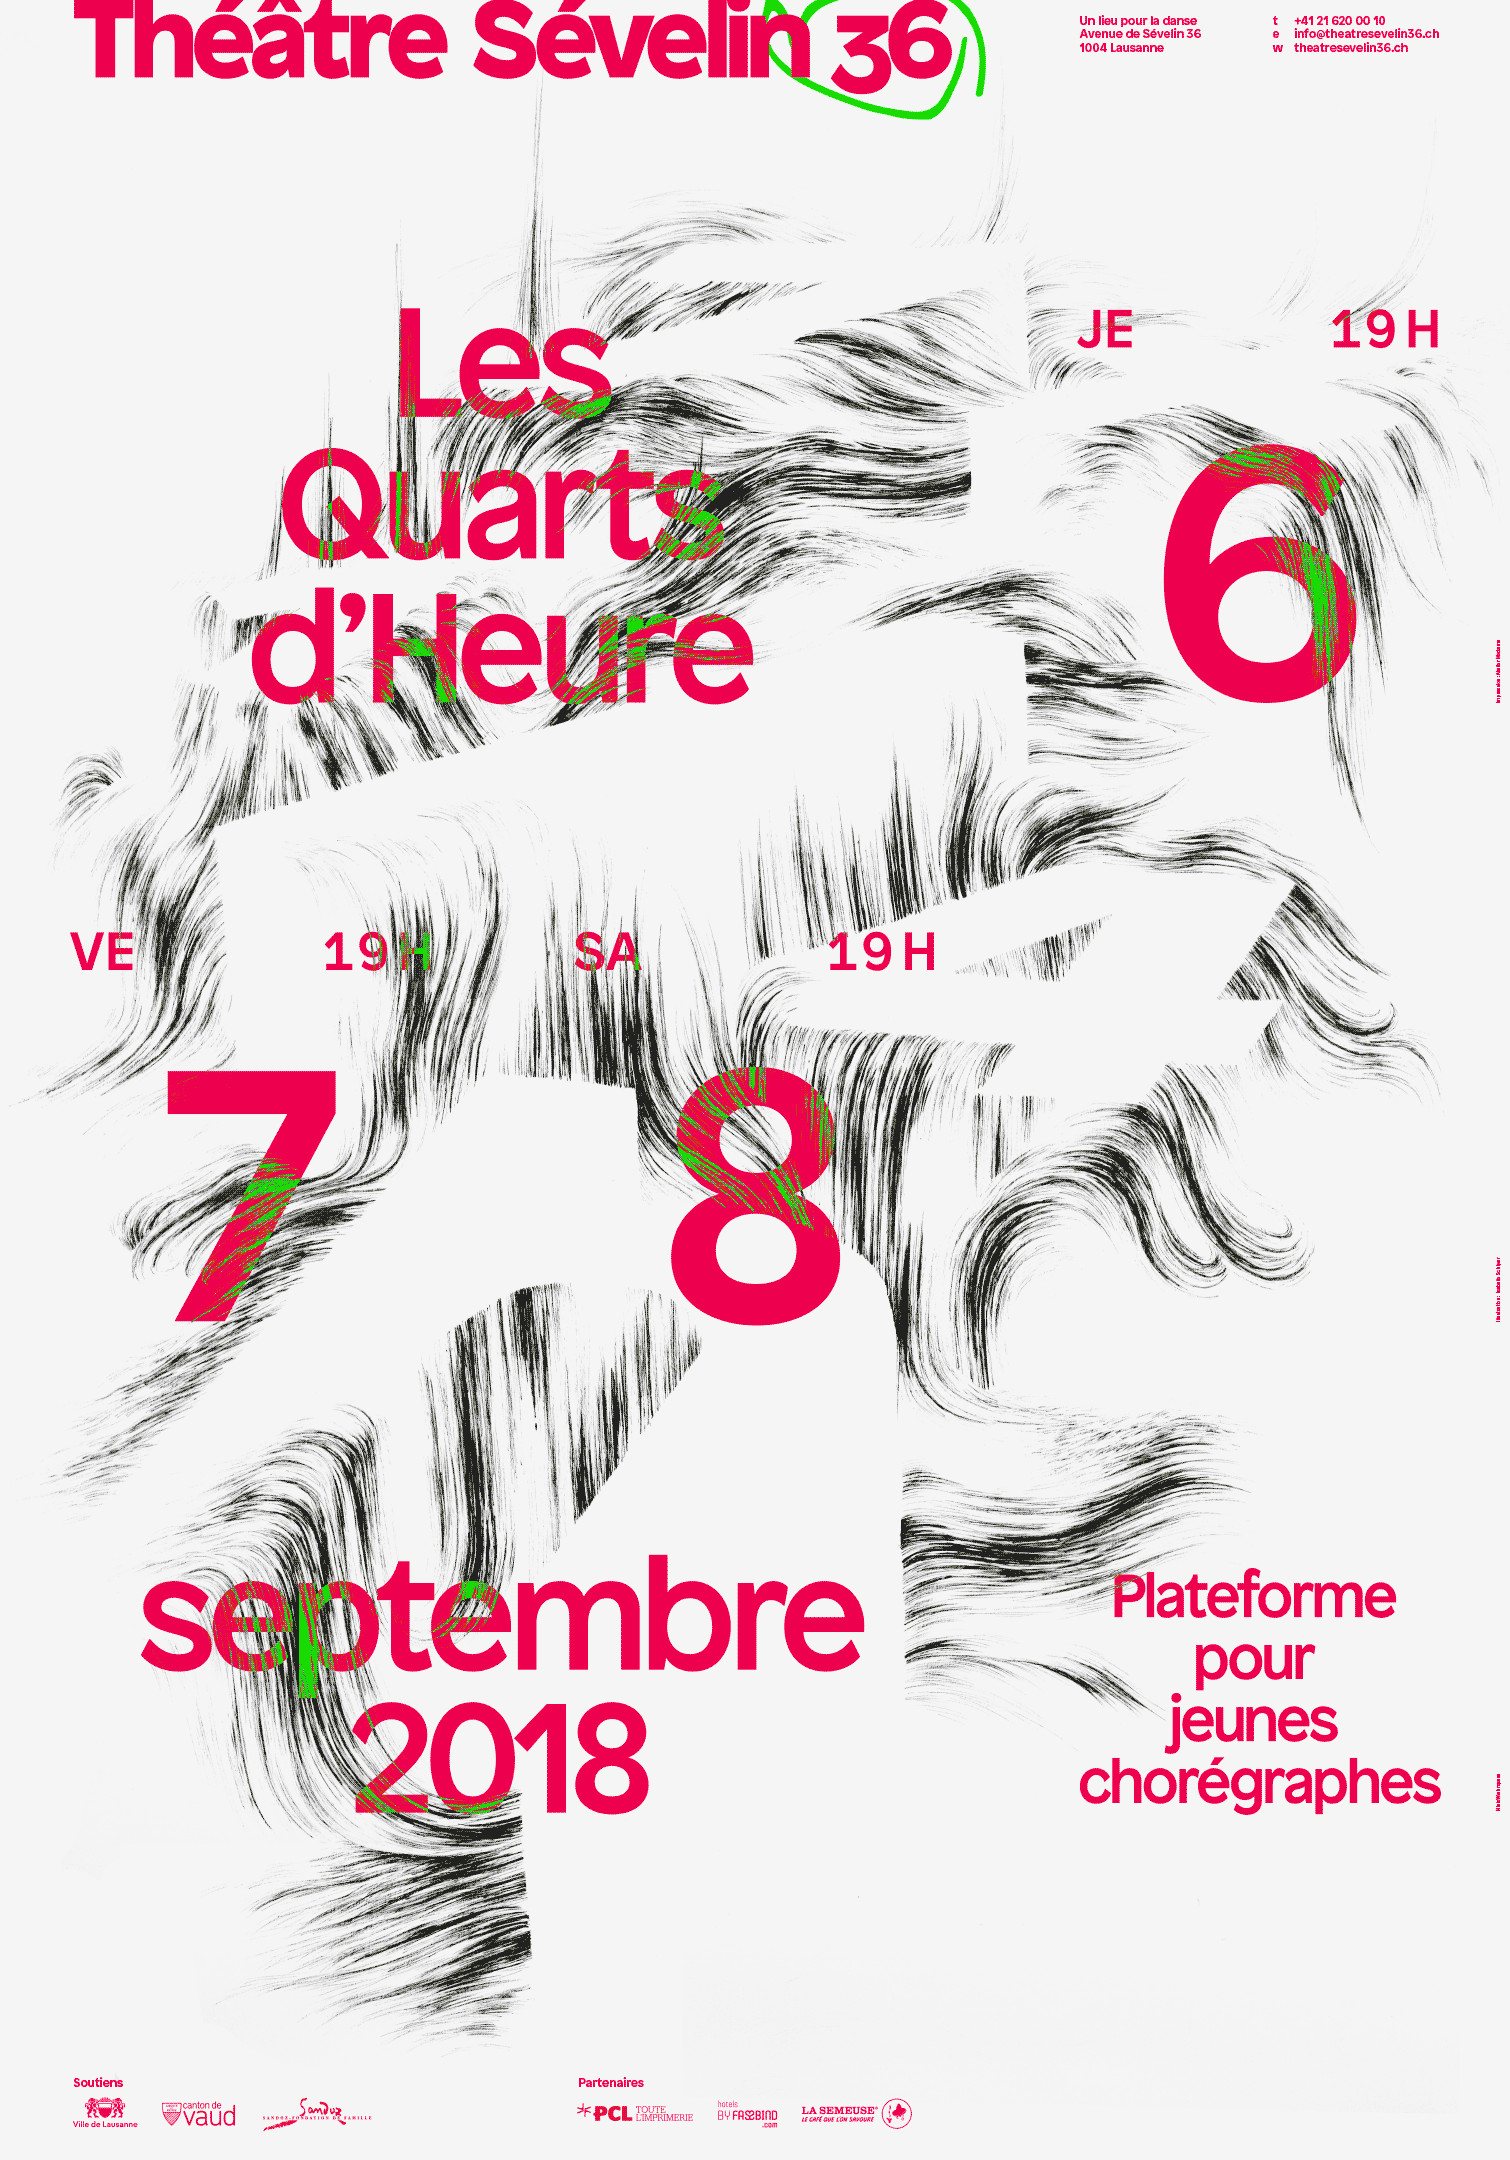 Illustration d’Isabelle Schiper sur l’affiche 2018 des Quarts d’Heure du Théâtre Sévelin 36